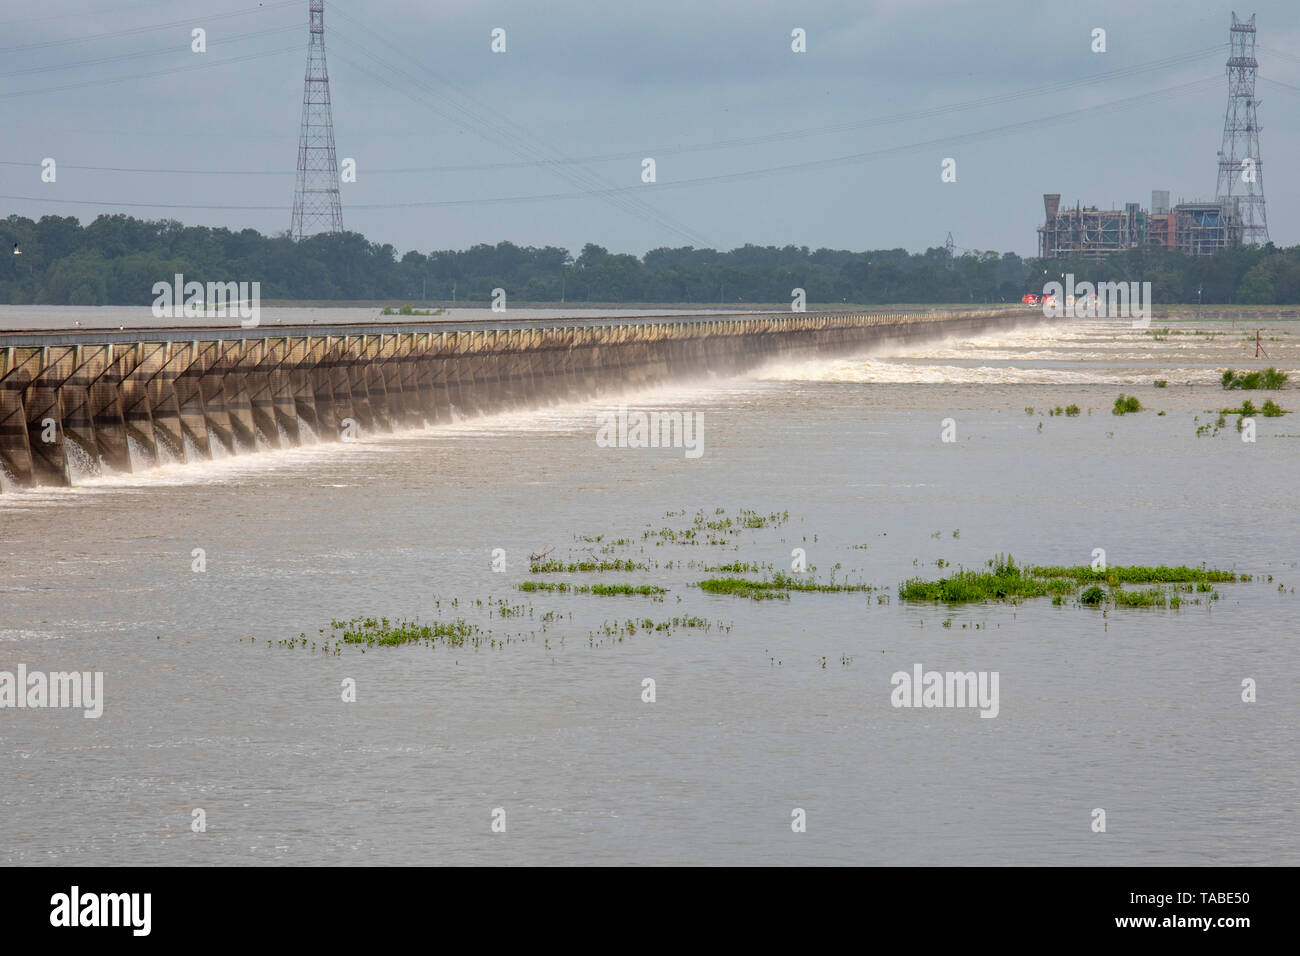 Norco, Louisiana - Die US-Armee Korps der Ingenieure öffnete die Motorhaube Carré Spillway zu schützen New Orleans von Mississippi Überschwemmung. Der Überlauf Stockfoto